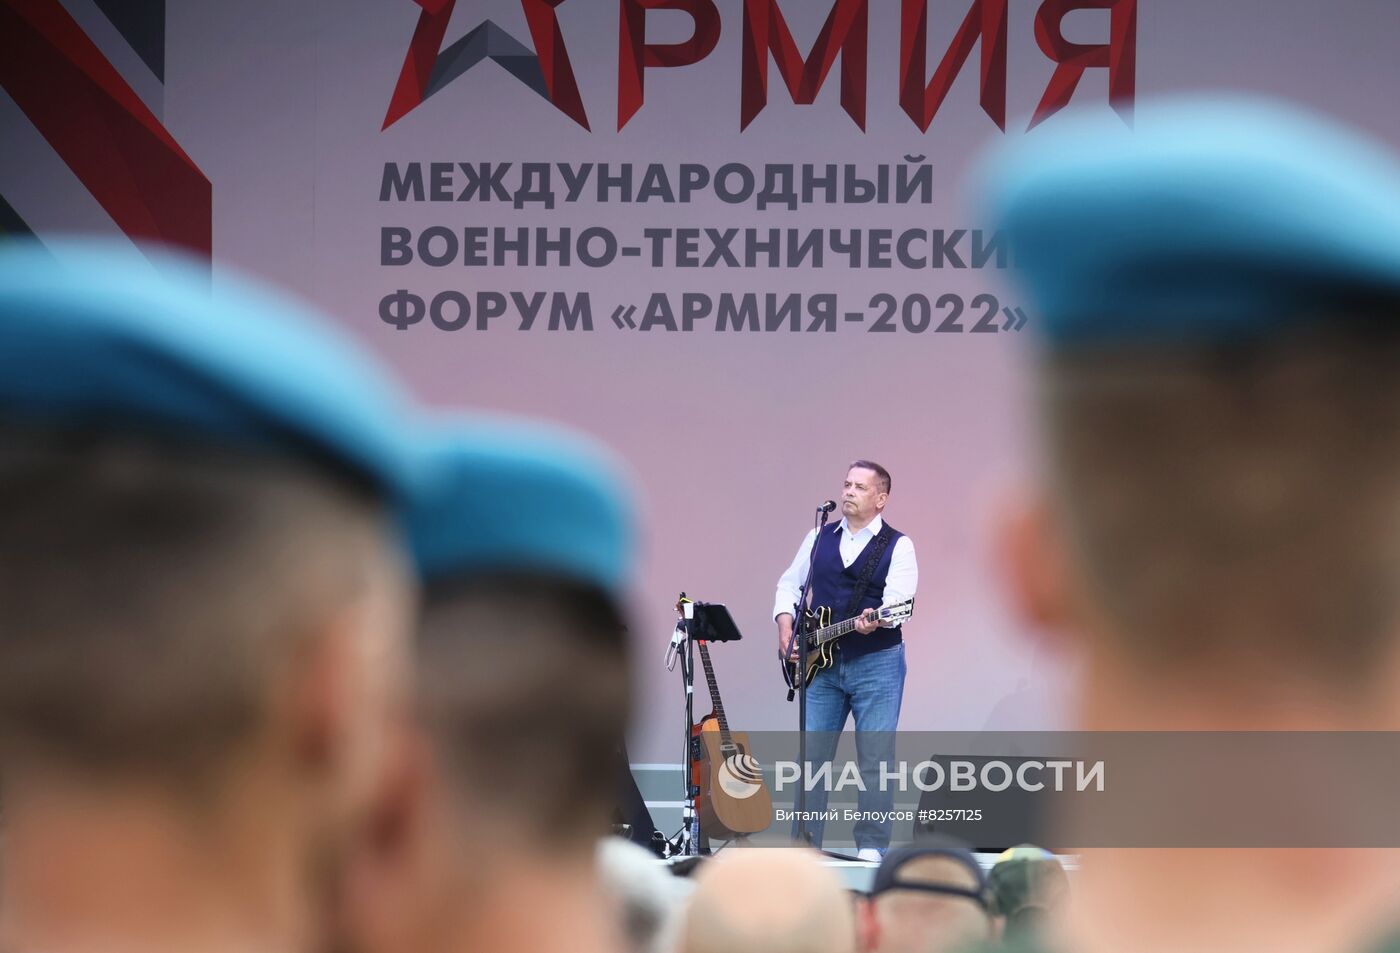       Закрытие международного форума "Армия-2022"